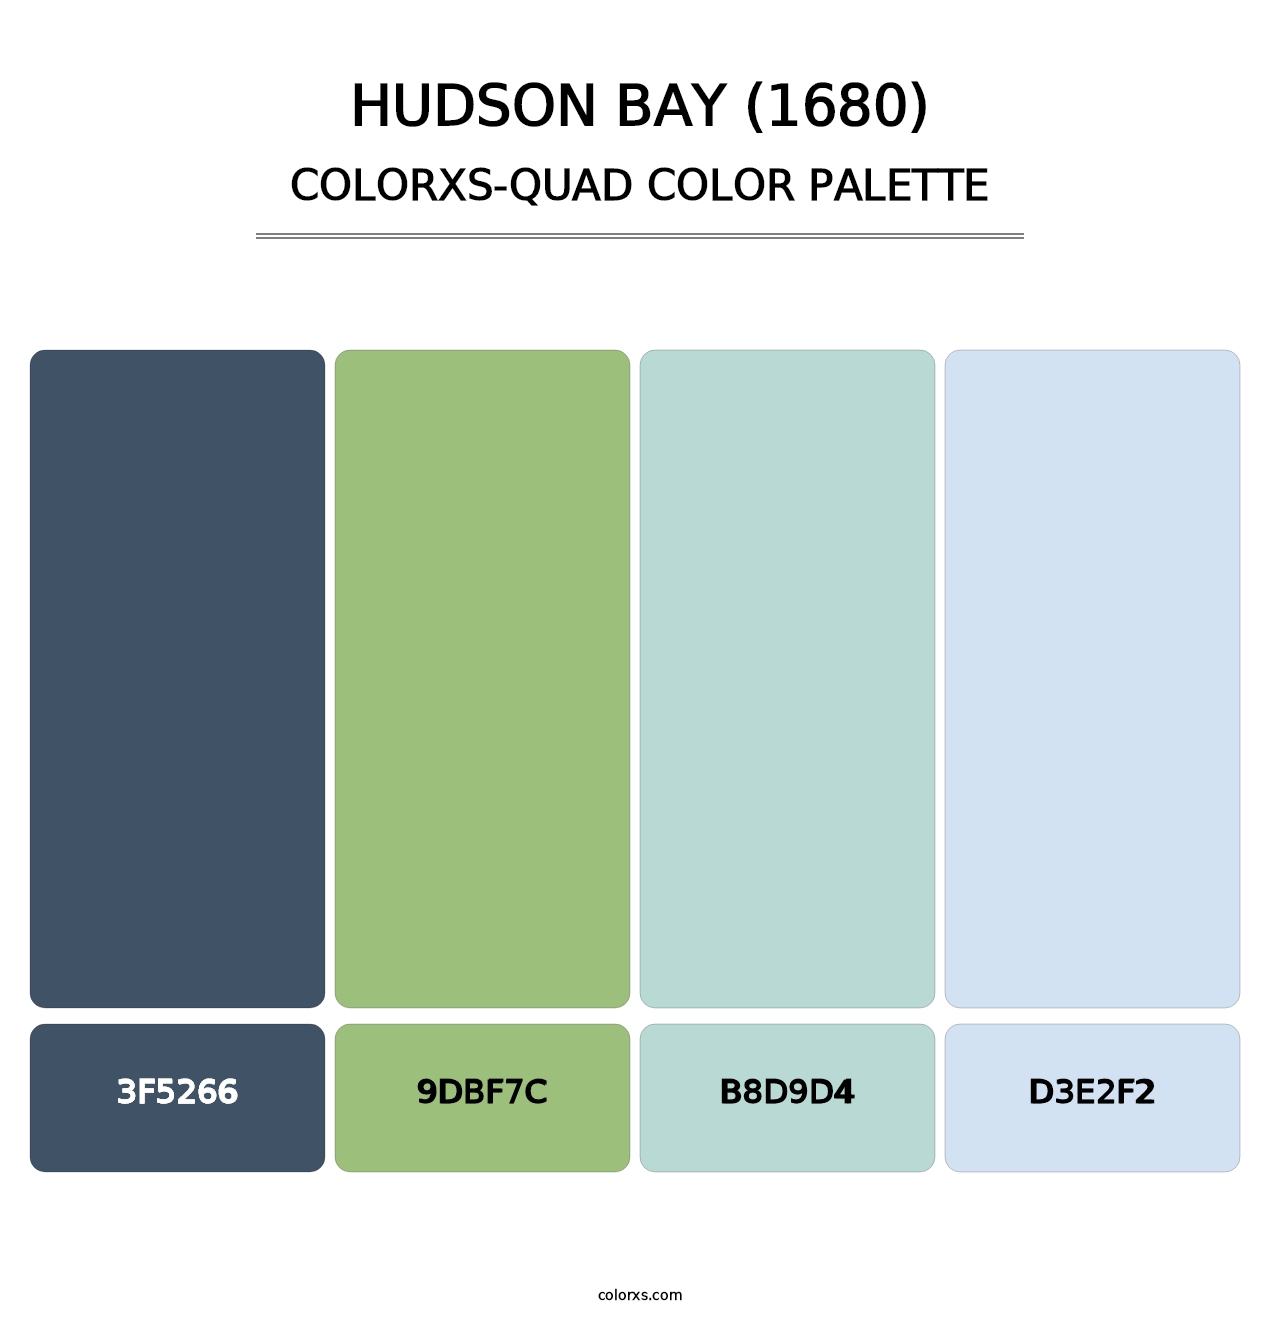 Hudson Bay (1680) - Colorxs Quad Palette